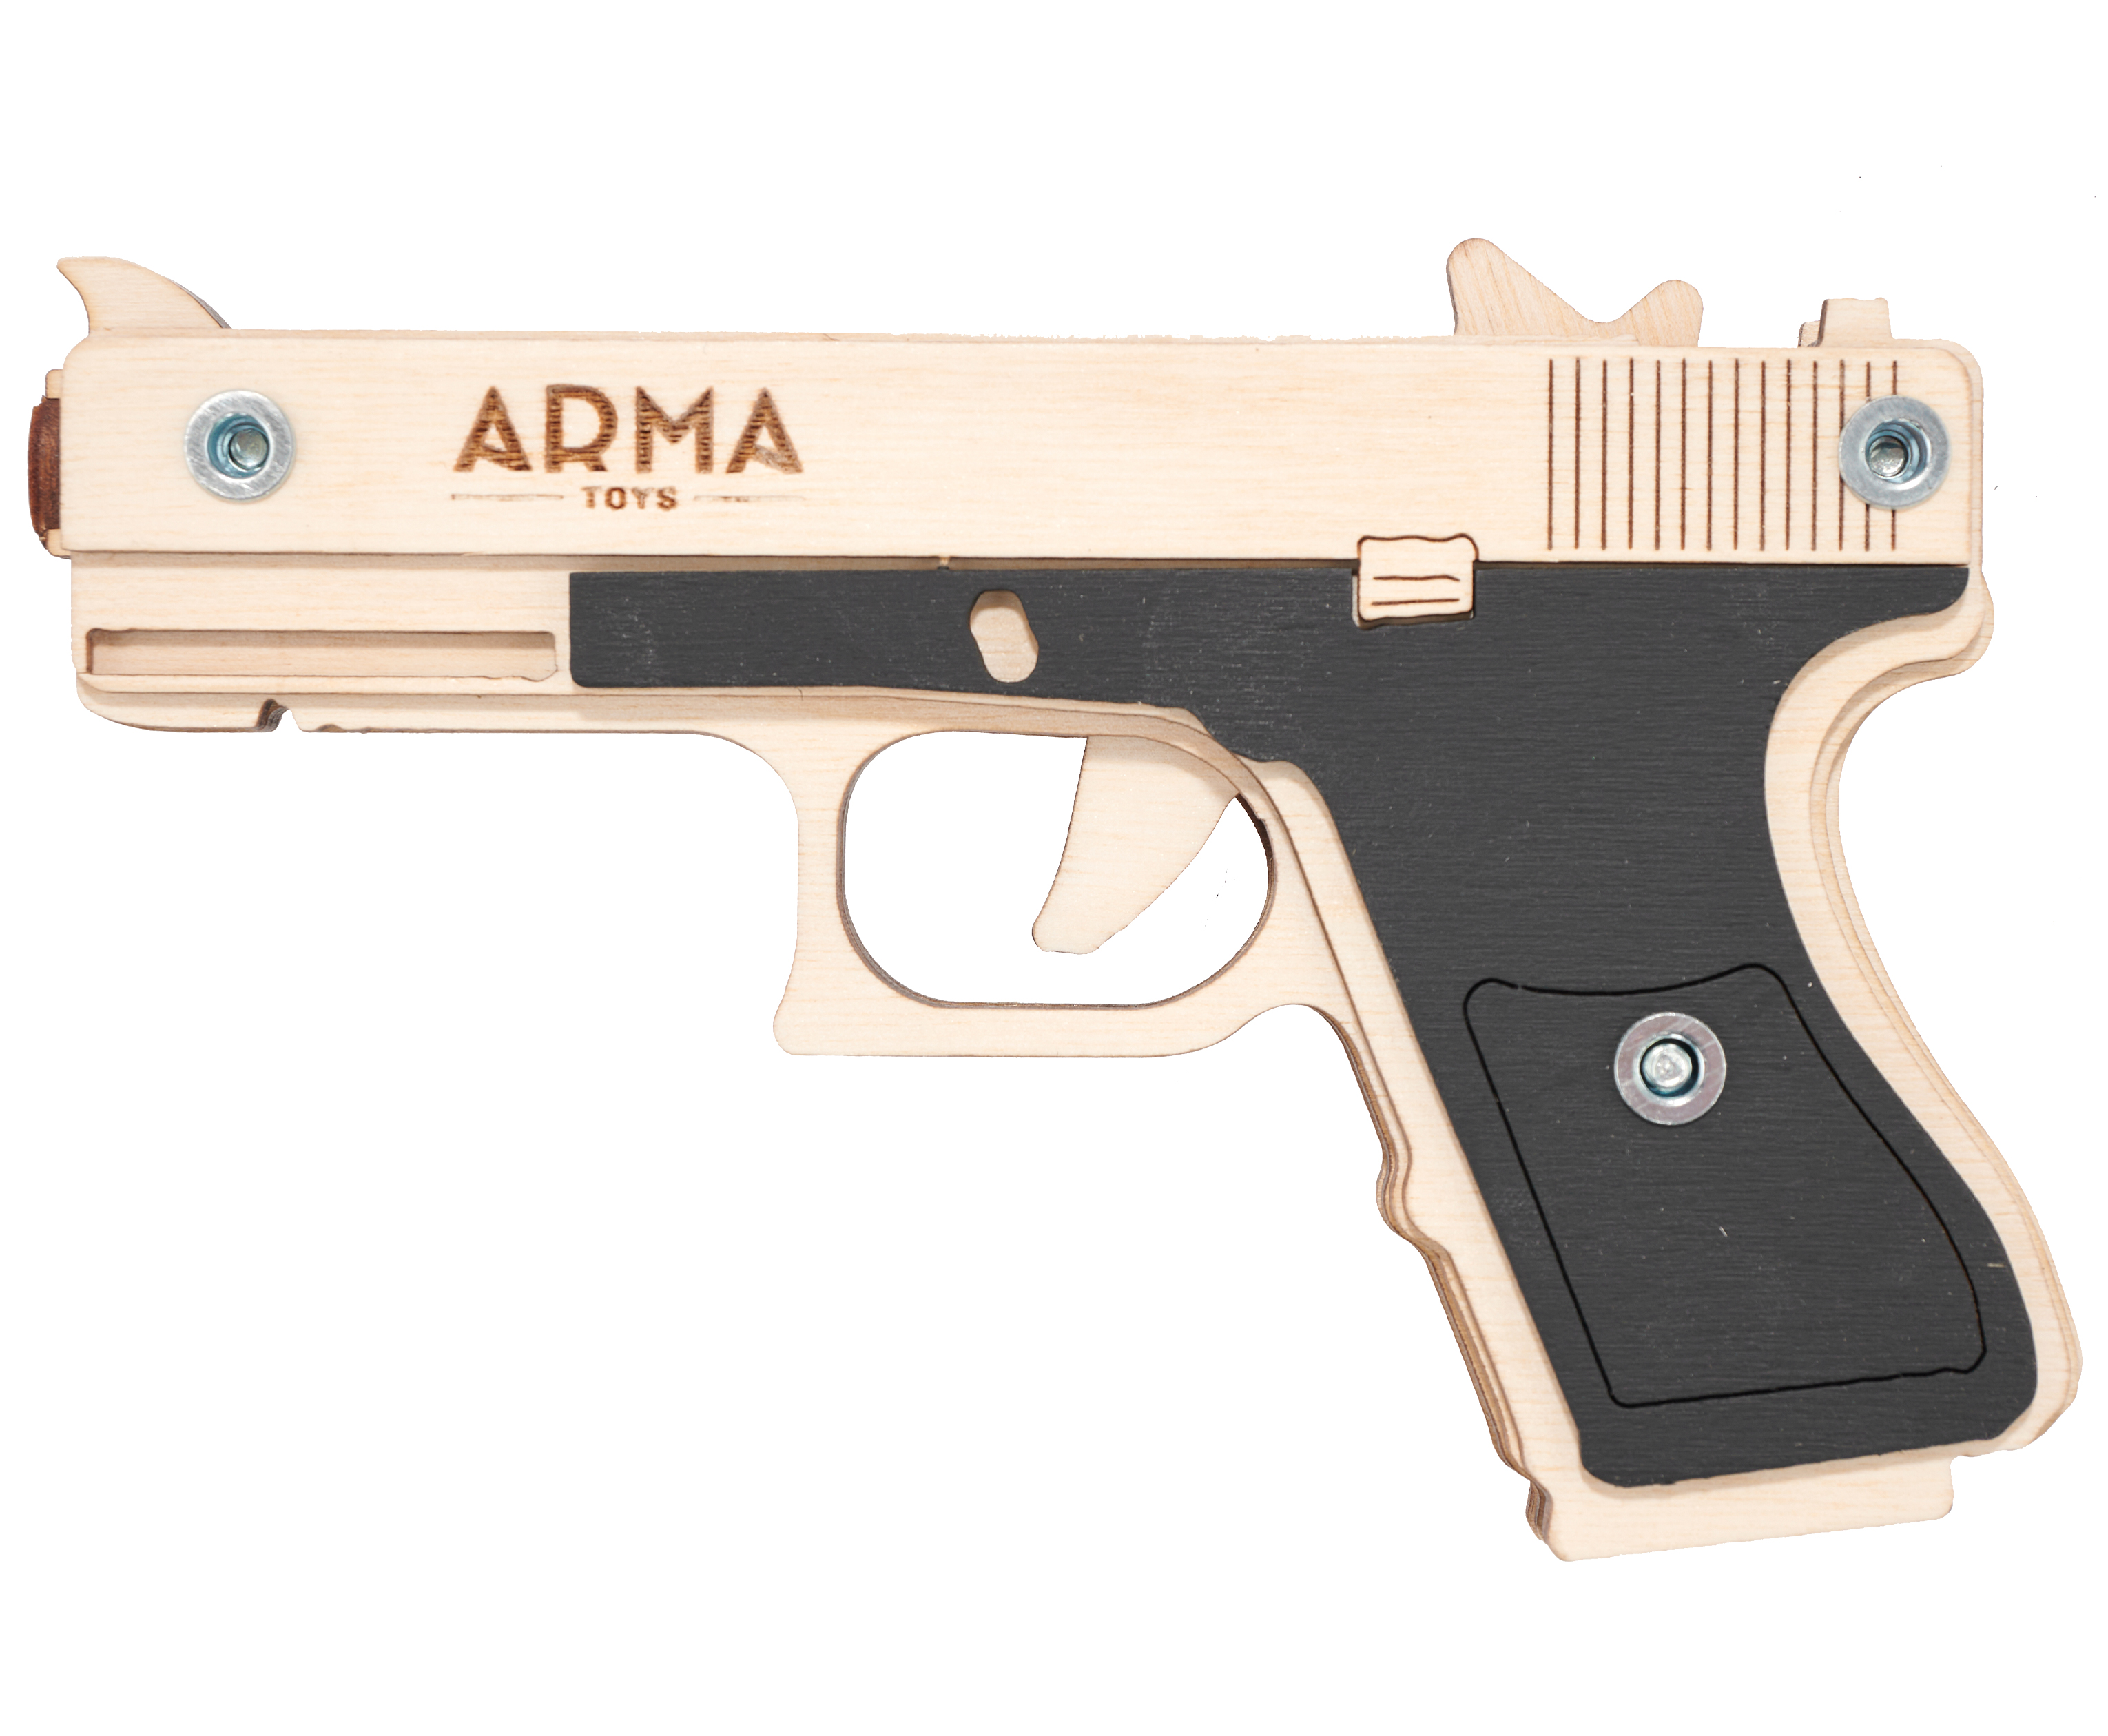 Резинкострел игрушечный Arma toys пистолет Glock Light макет, Глок 26, AT027, окрашенный резинкострел arma toys пистолет тт тульский токарева